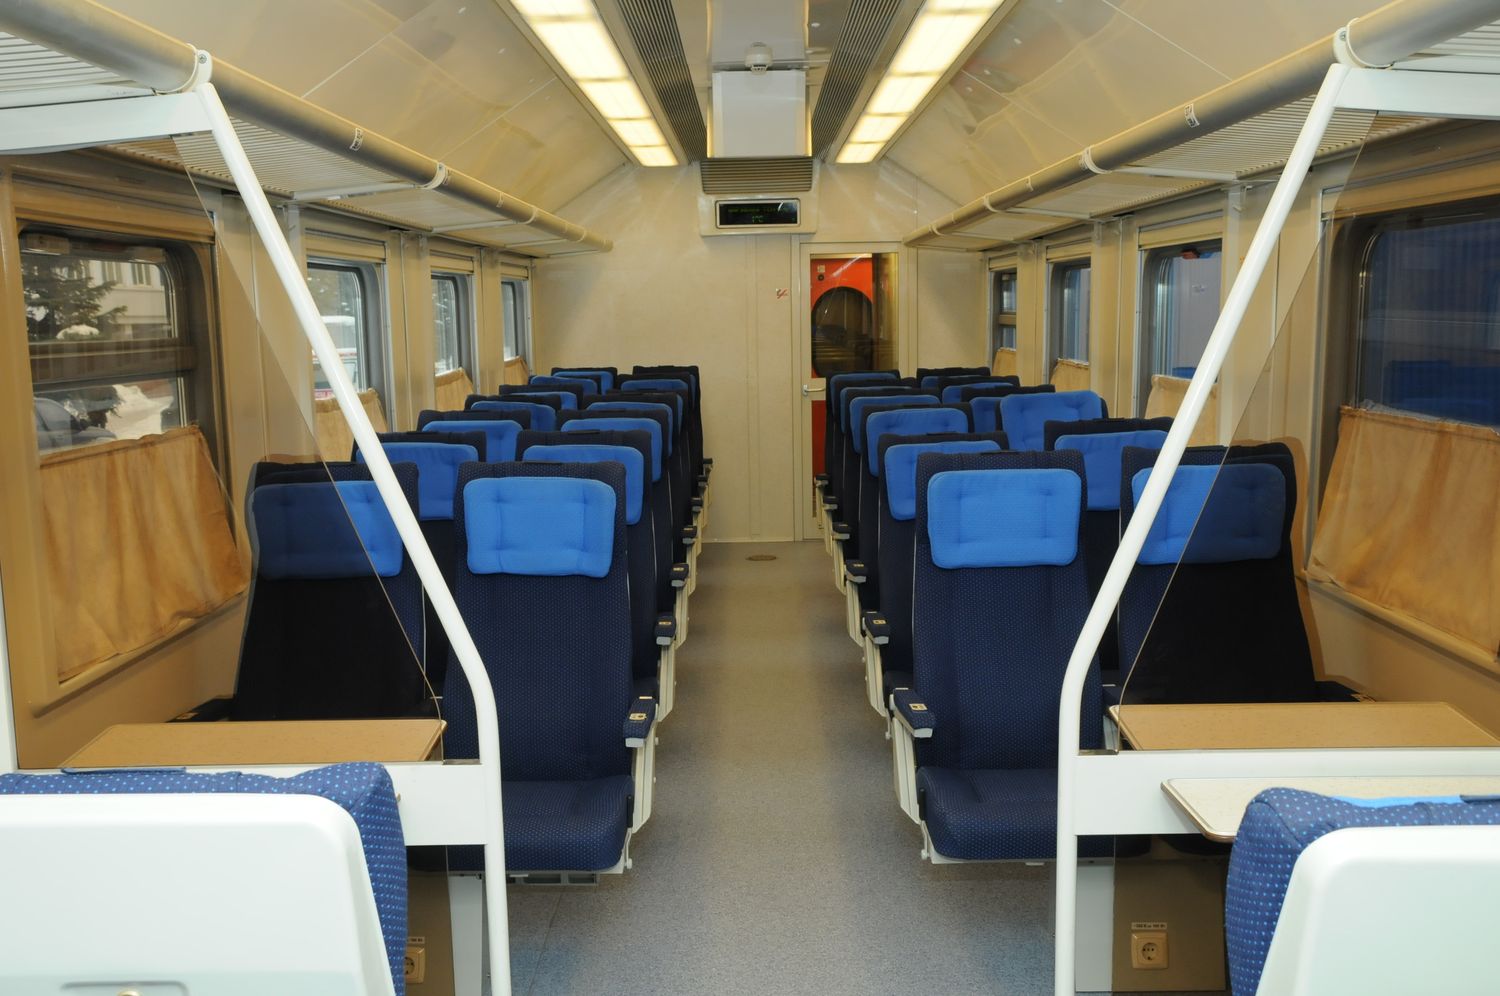 поезд 028а москва санкт петербург сидячие места